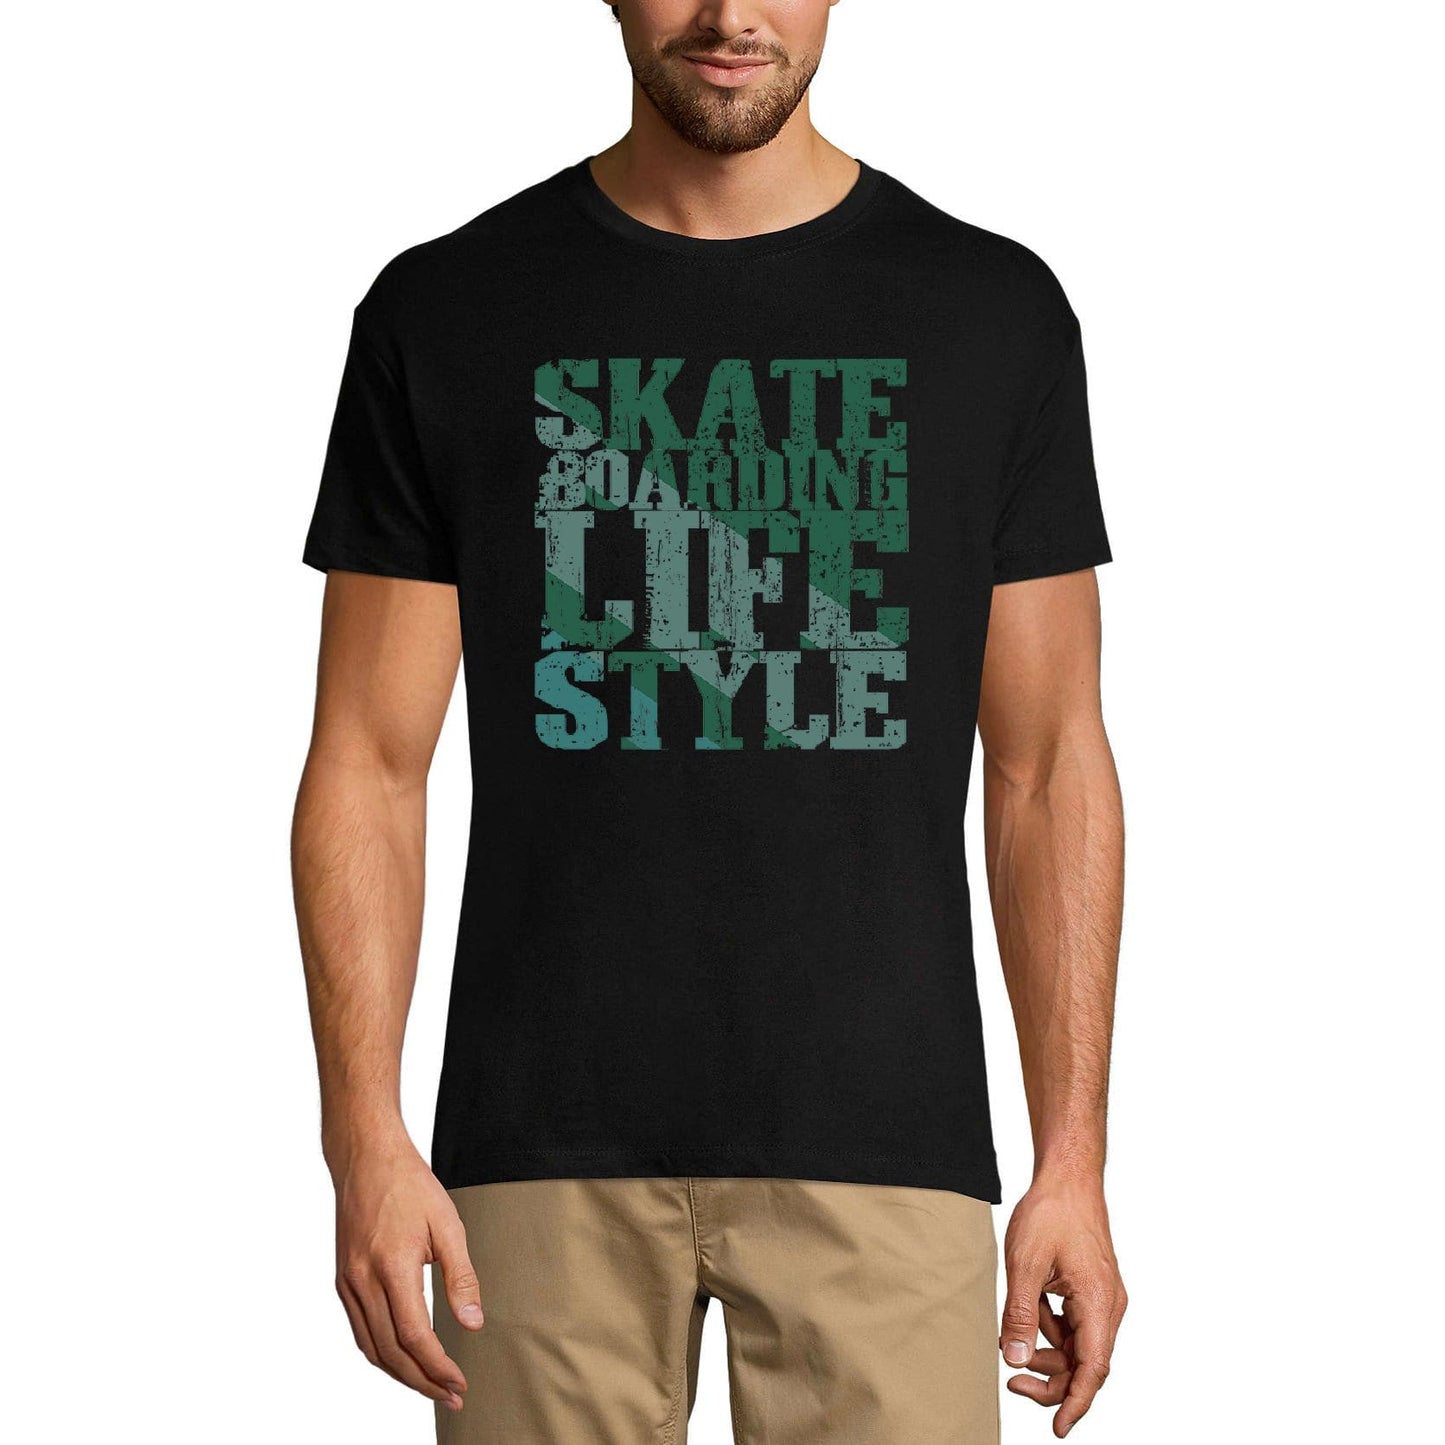 ULTRABASIC Men's Novelty T-Shirt Skate Boarding Lifestyle - Skating Tee Shirt